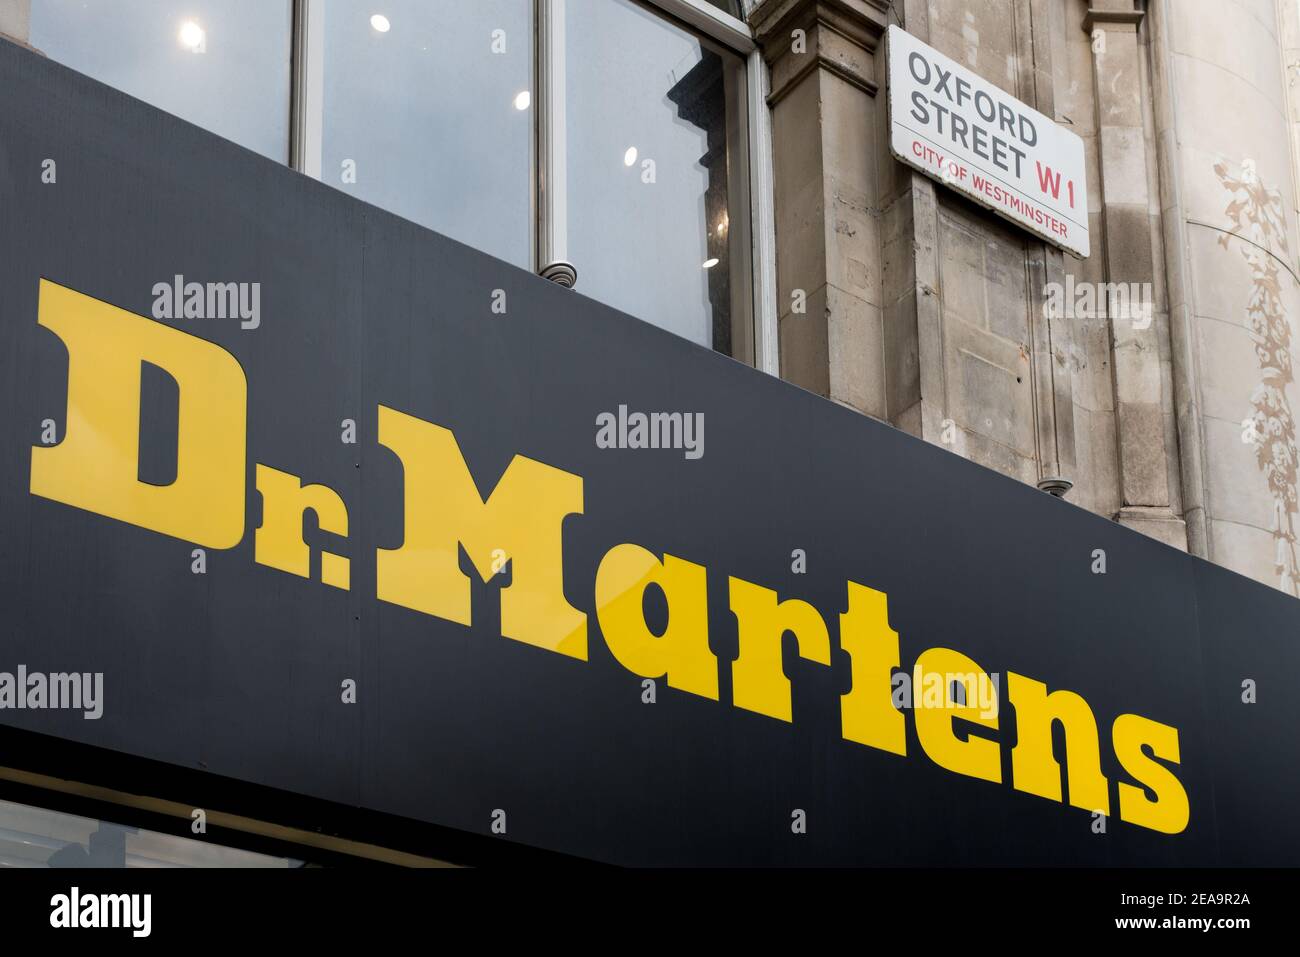 Logo Boutique enseigne avant de la marque détaillant Classic British Show Shop Dr. Martens, 386 Oxford Street, Londres W1C 1JT Banque D'Images